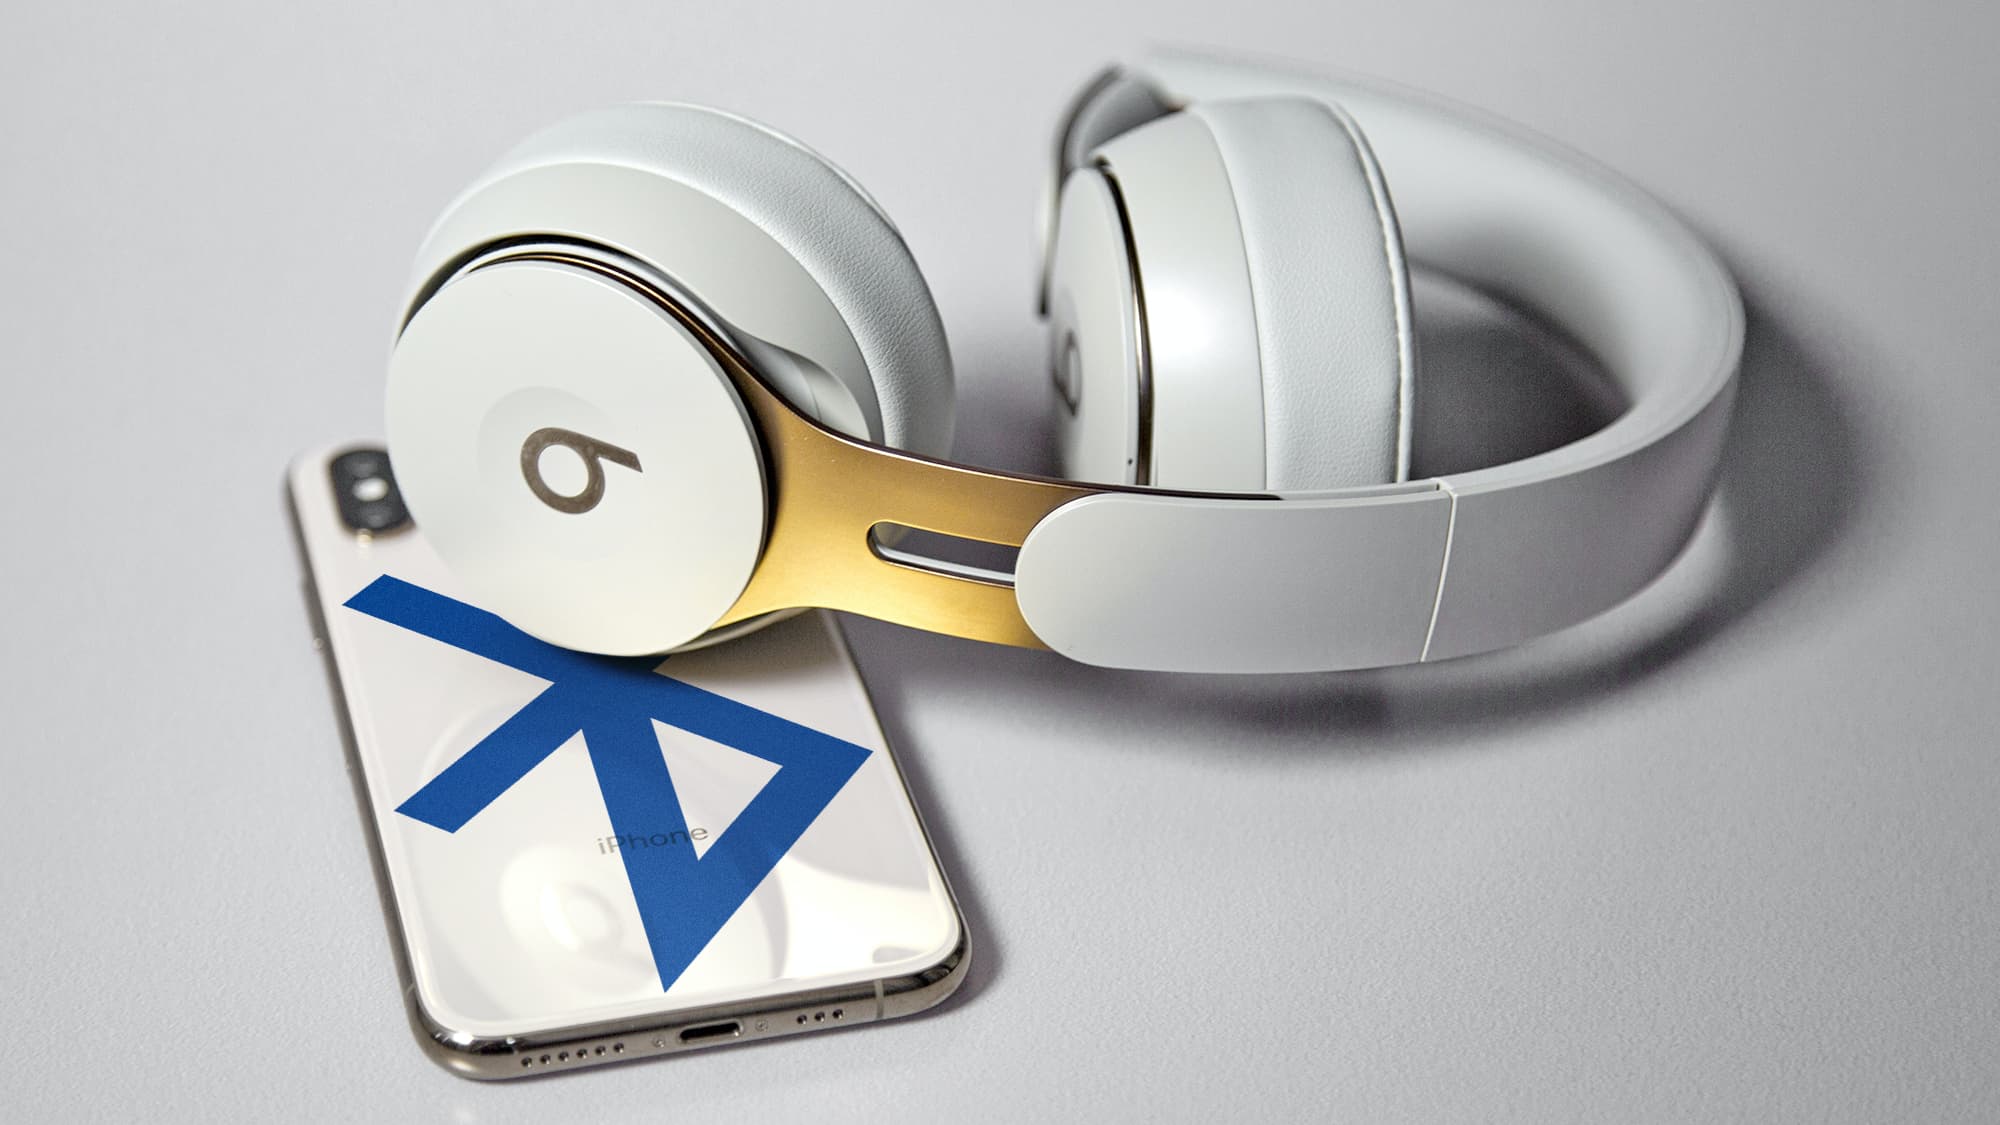 Montagem com traseira de um smartphone com o logo do Bluetooth e um fone Beats